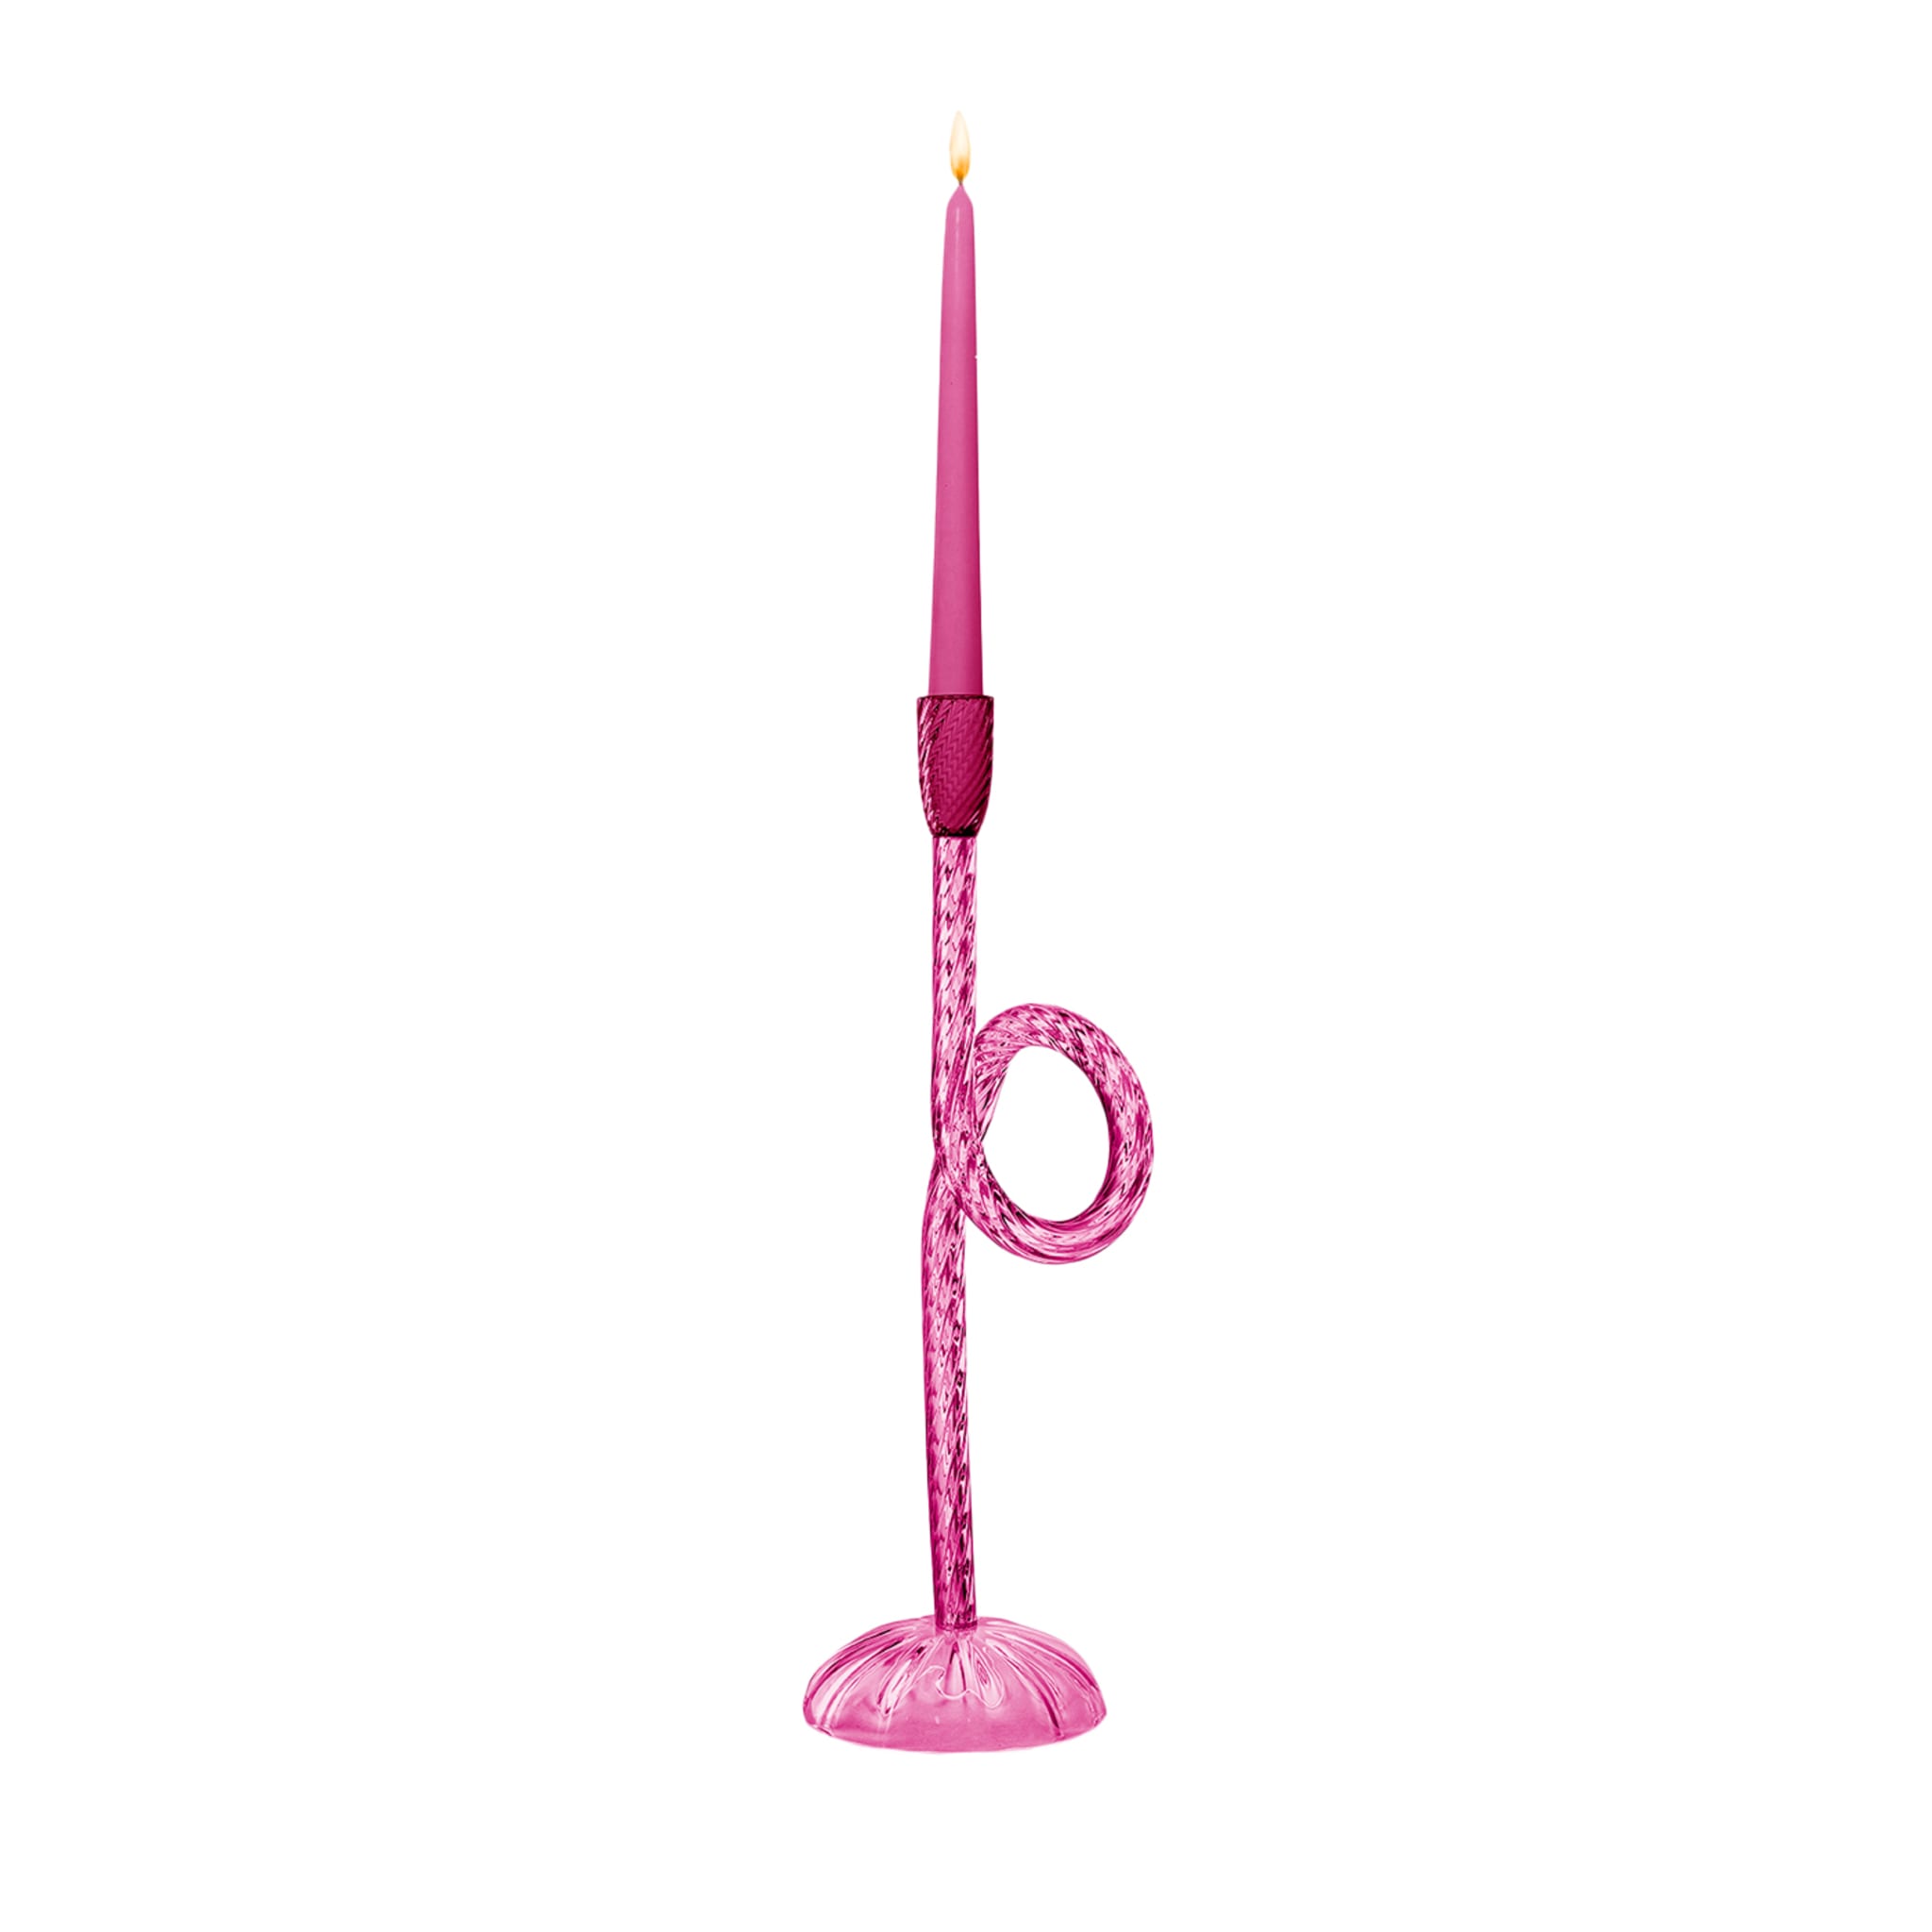 Rubinfarbener Kerzenleuchter mit venezianischem Knoten - Hauptansicht